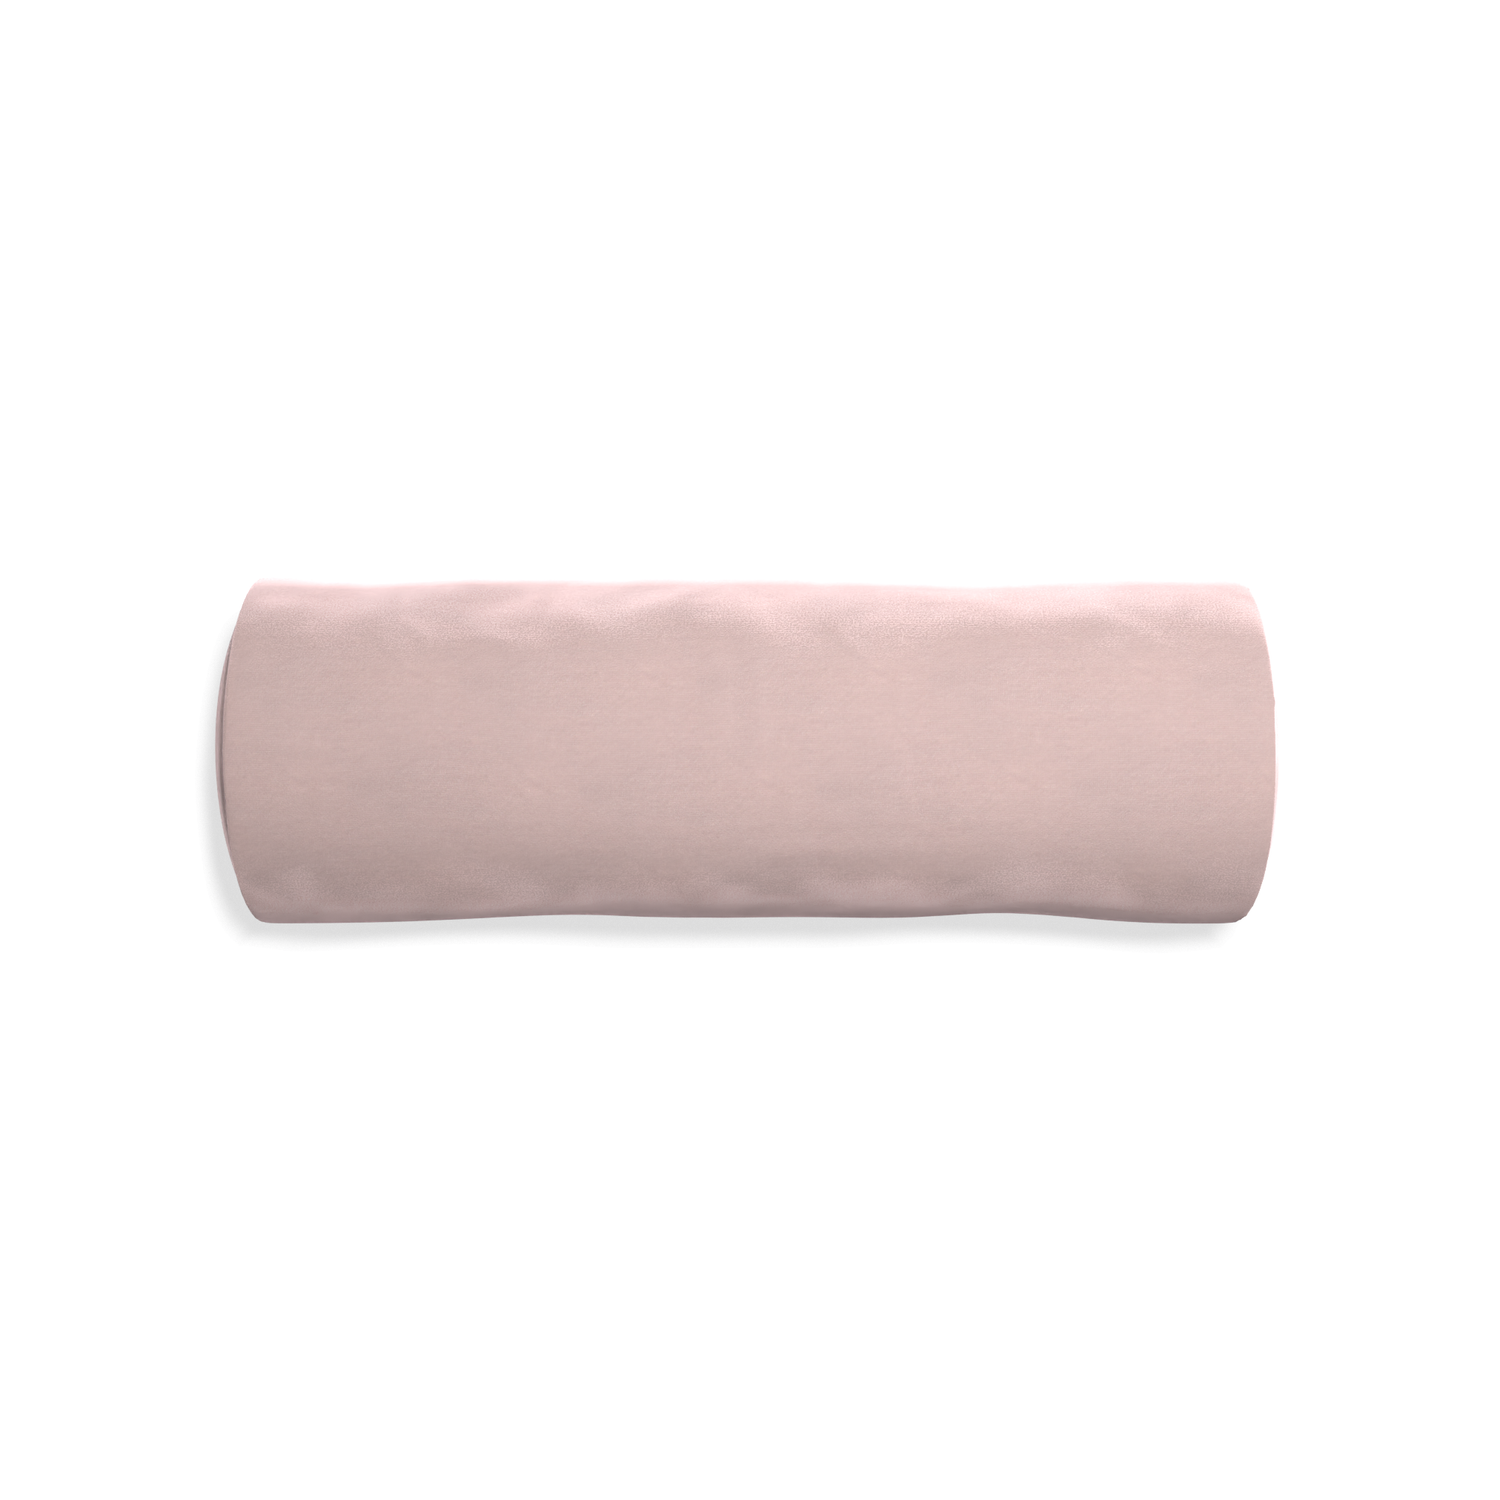 bolster light pink velvet pillow